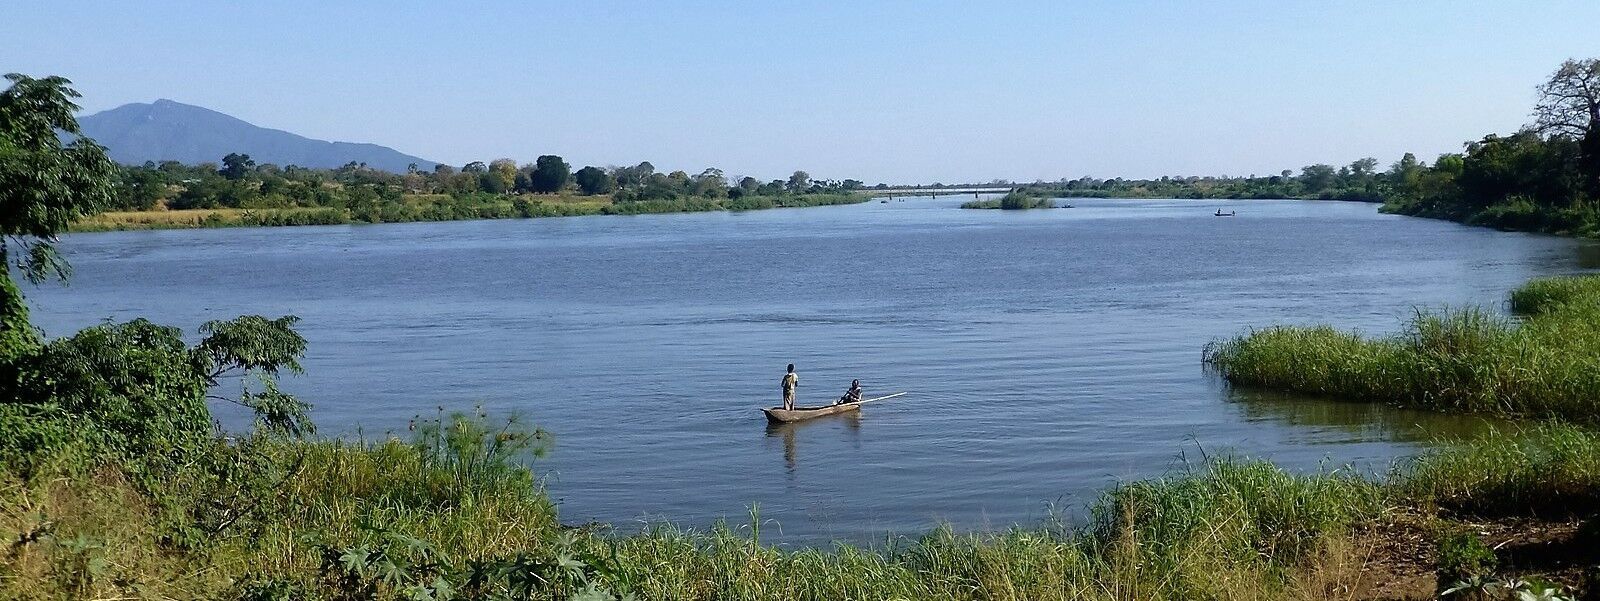 Shire River Basin, Malawi